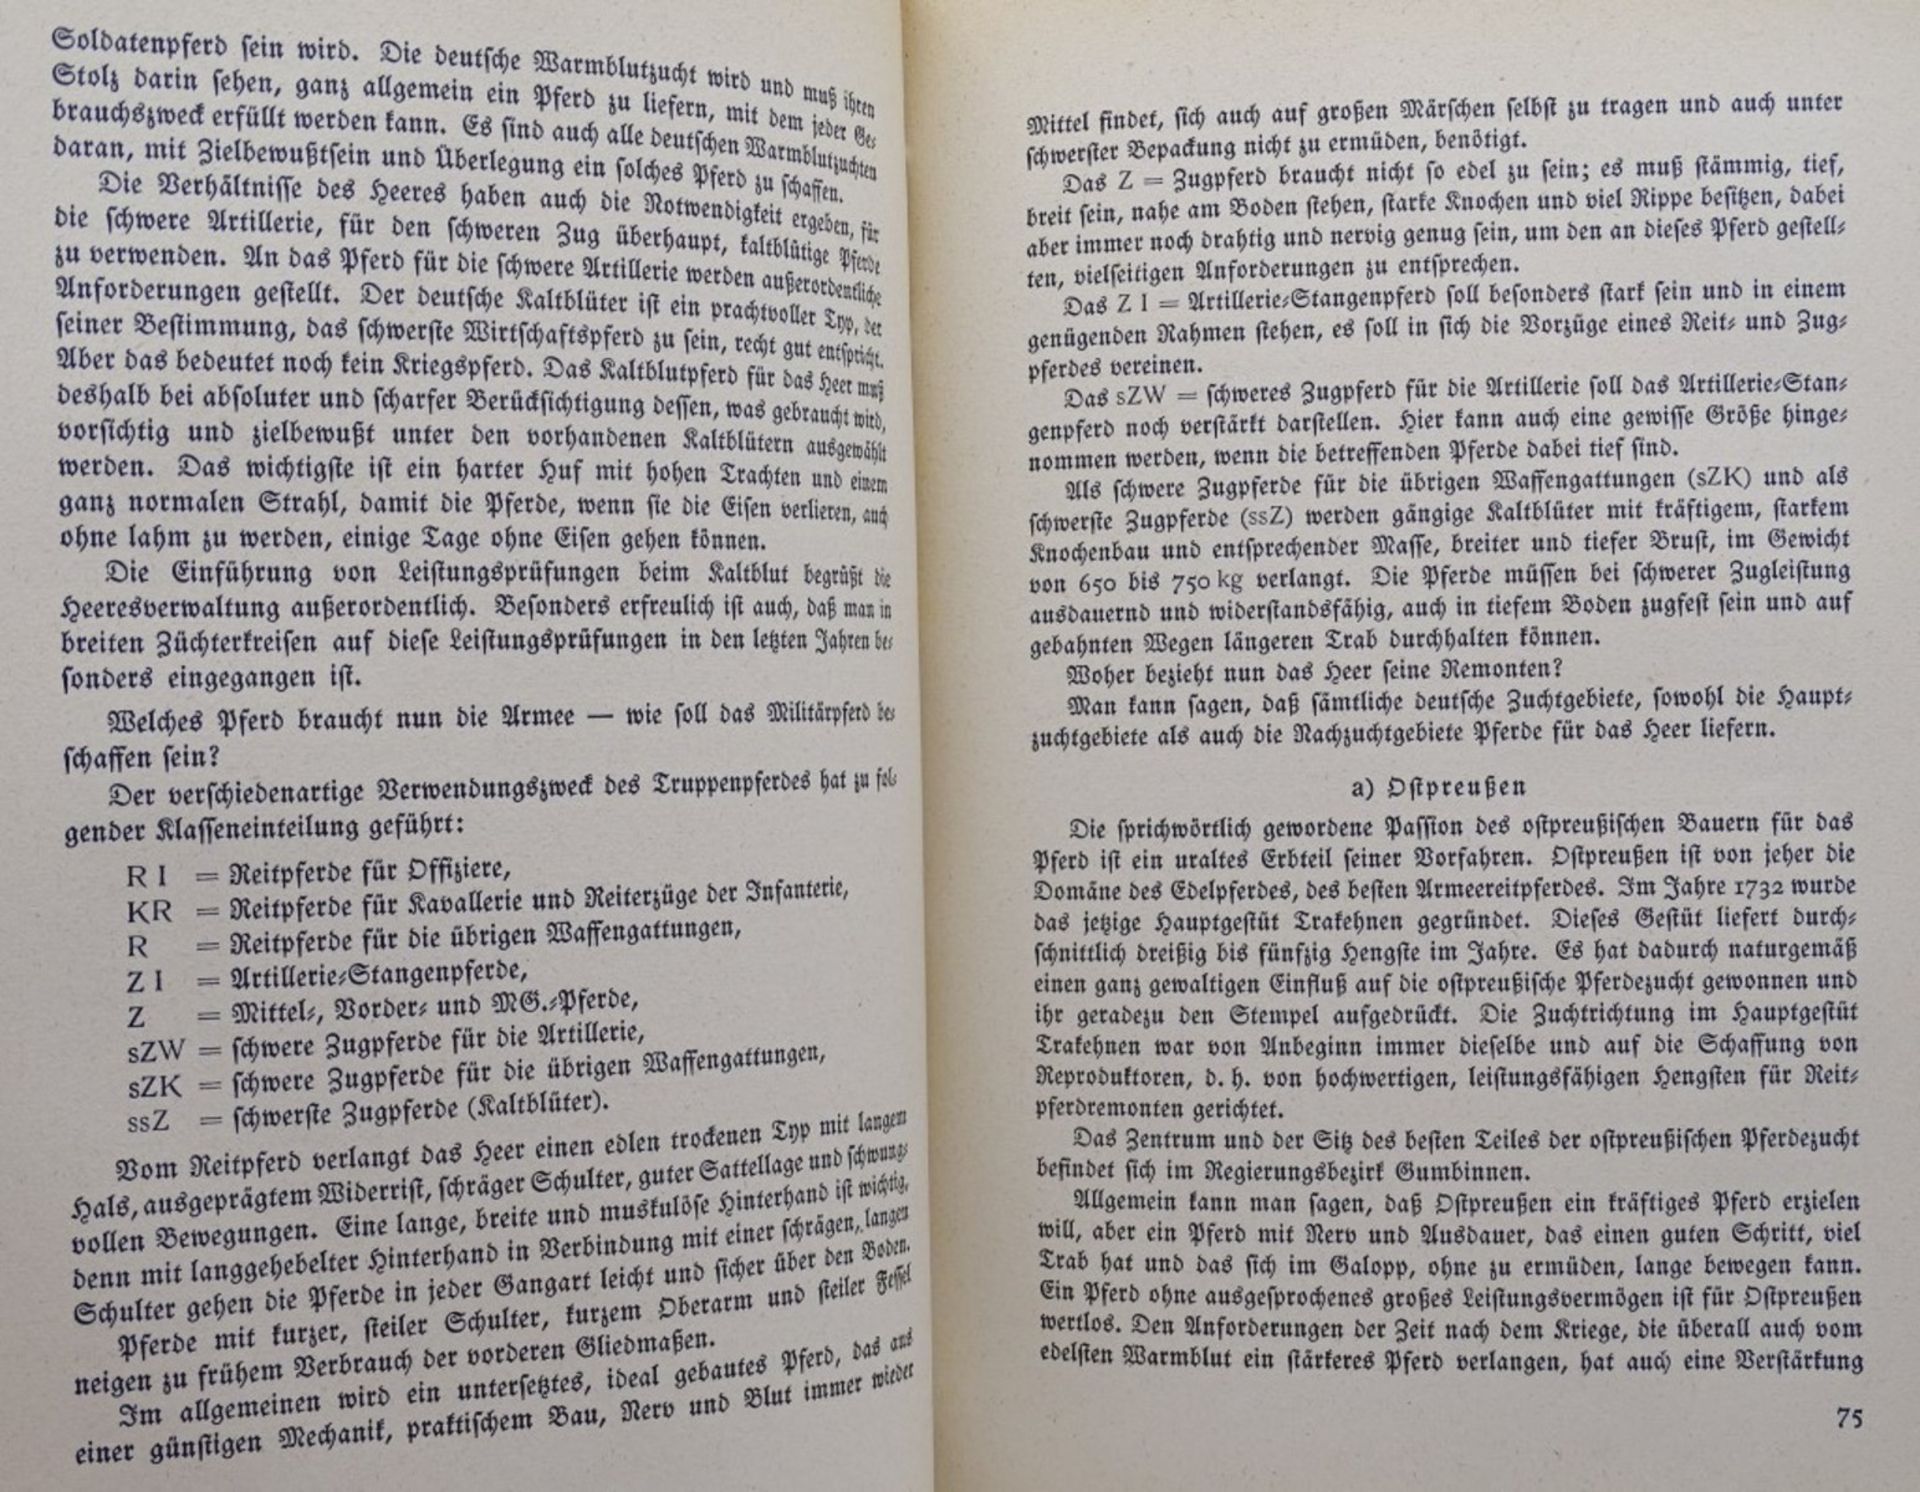 Jahrbuch des deutsches Heeres 1938 - Image 6 of 6